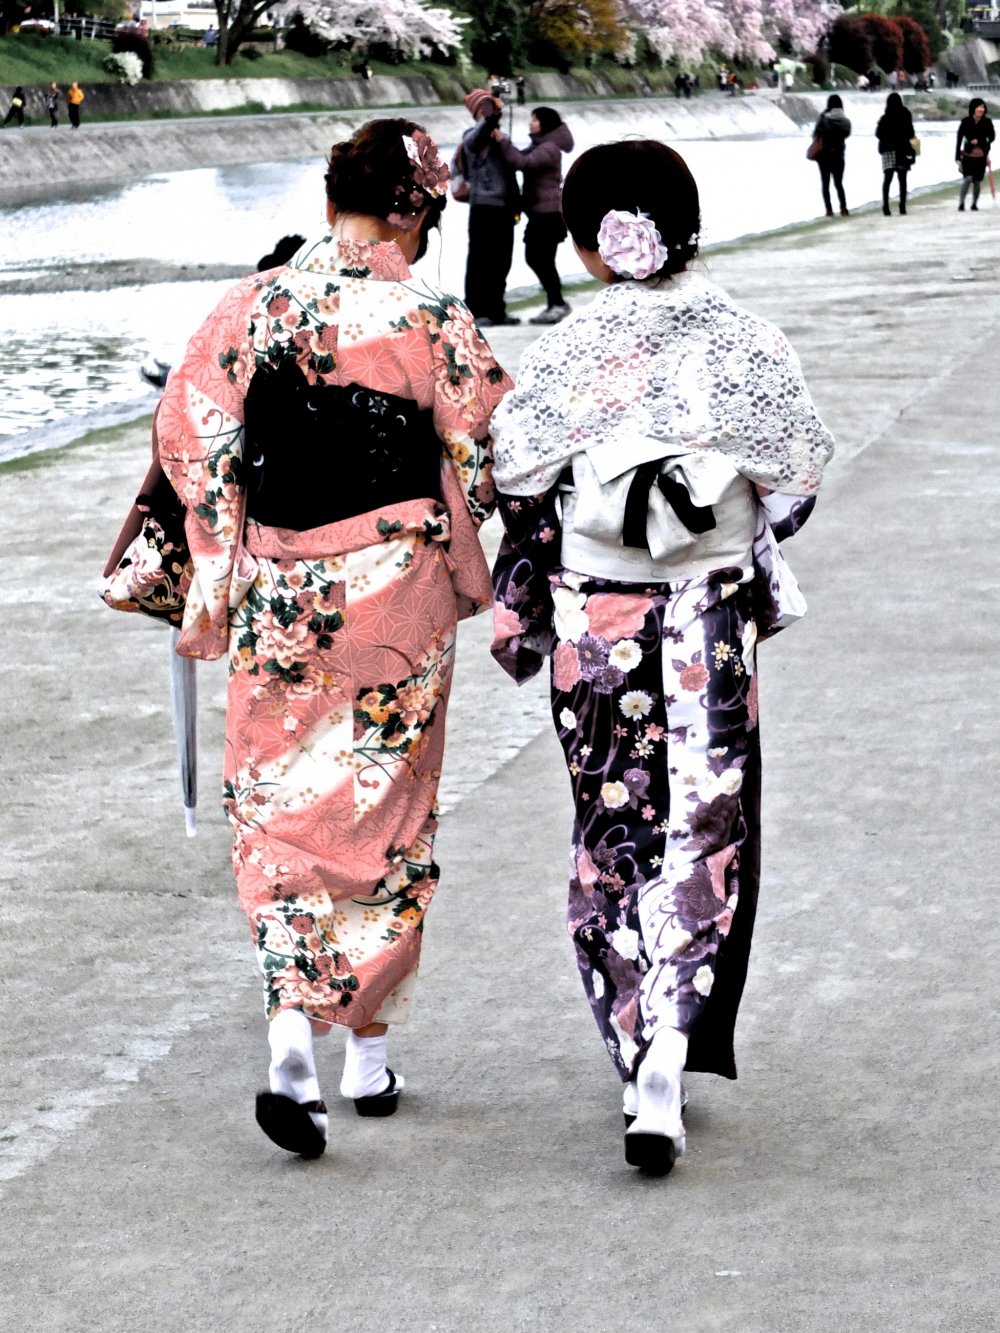 สาวๆ ในชุดกิโมโนมาเดินเล่นริมน้ำ